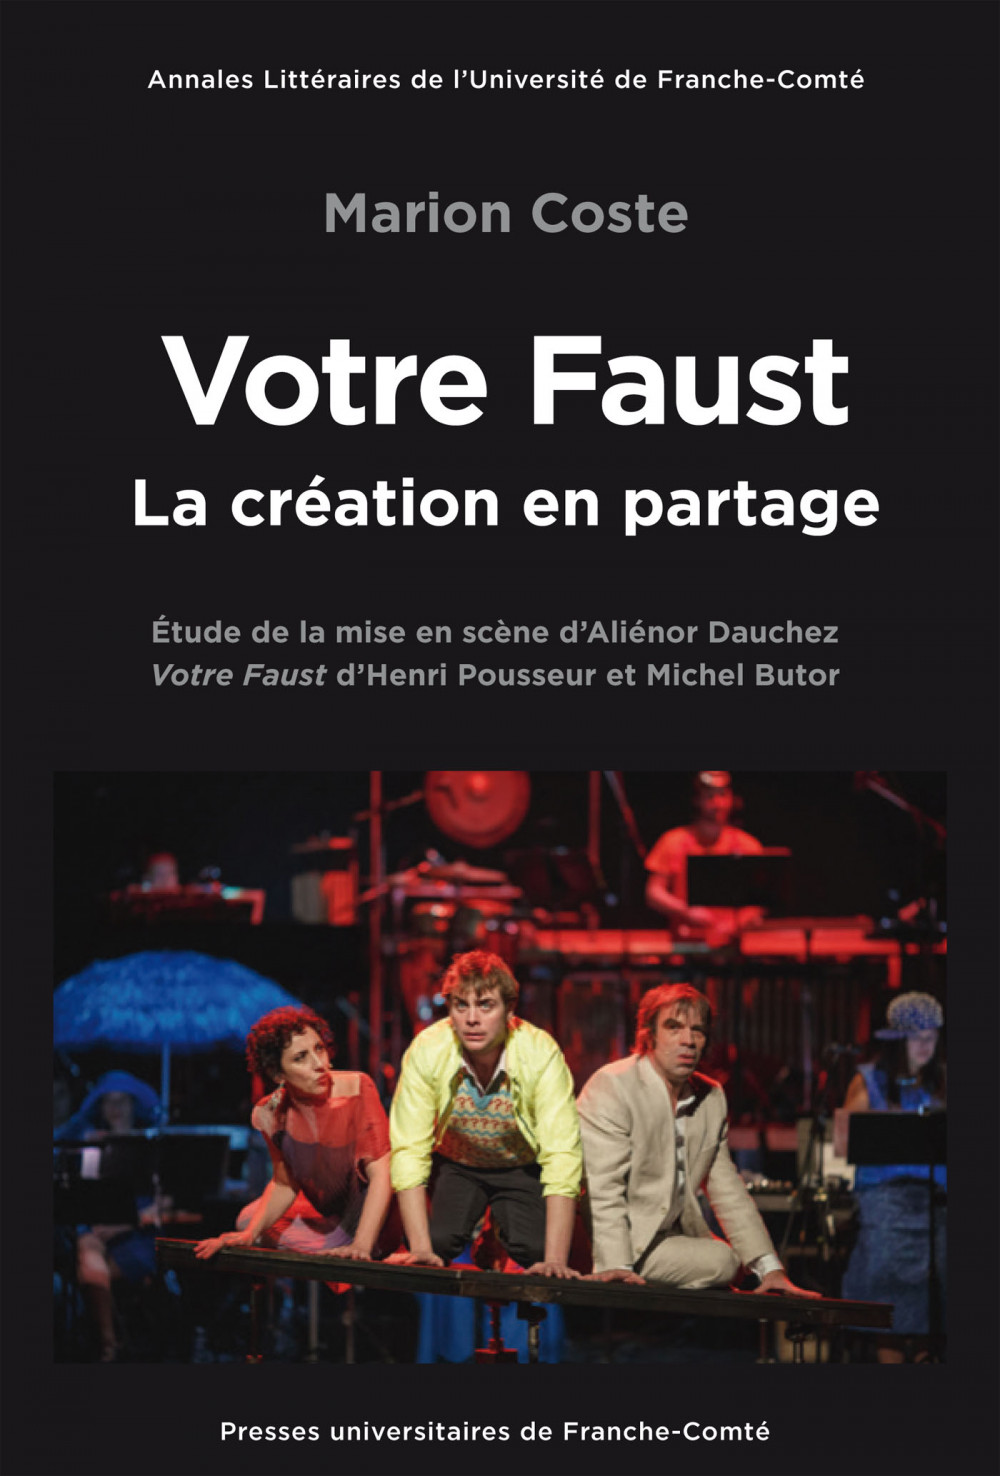 Votre Faust mis en scène par Aliénor Dauchez, la création en partage